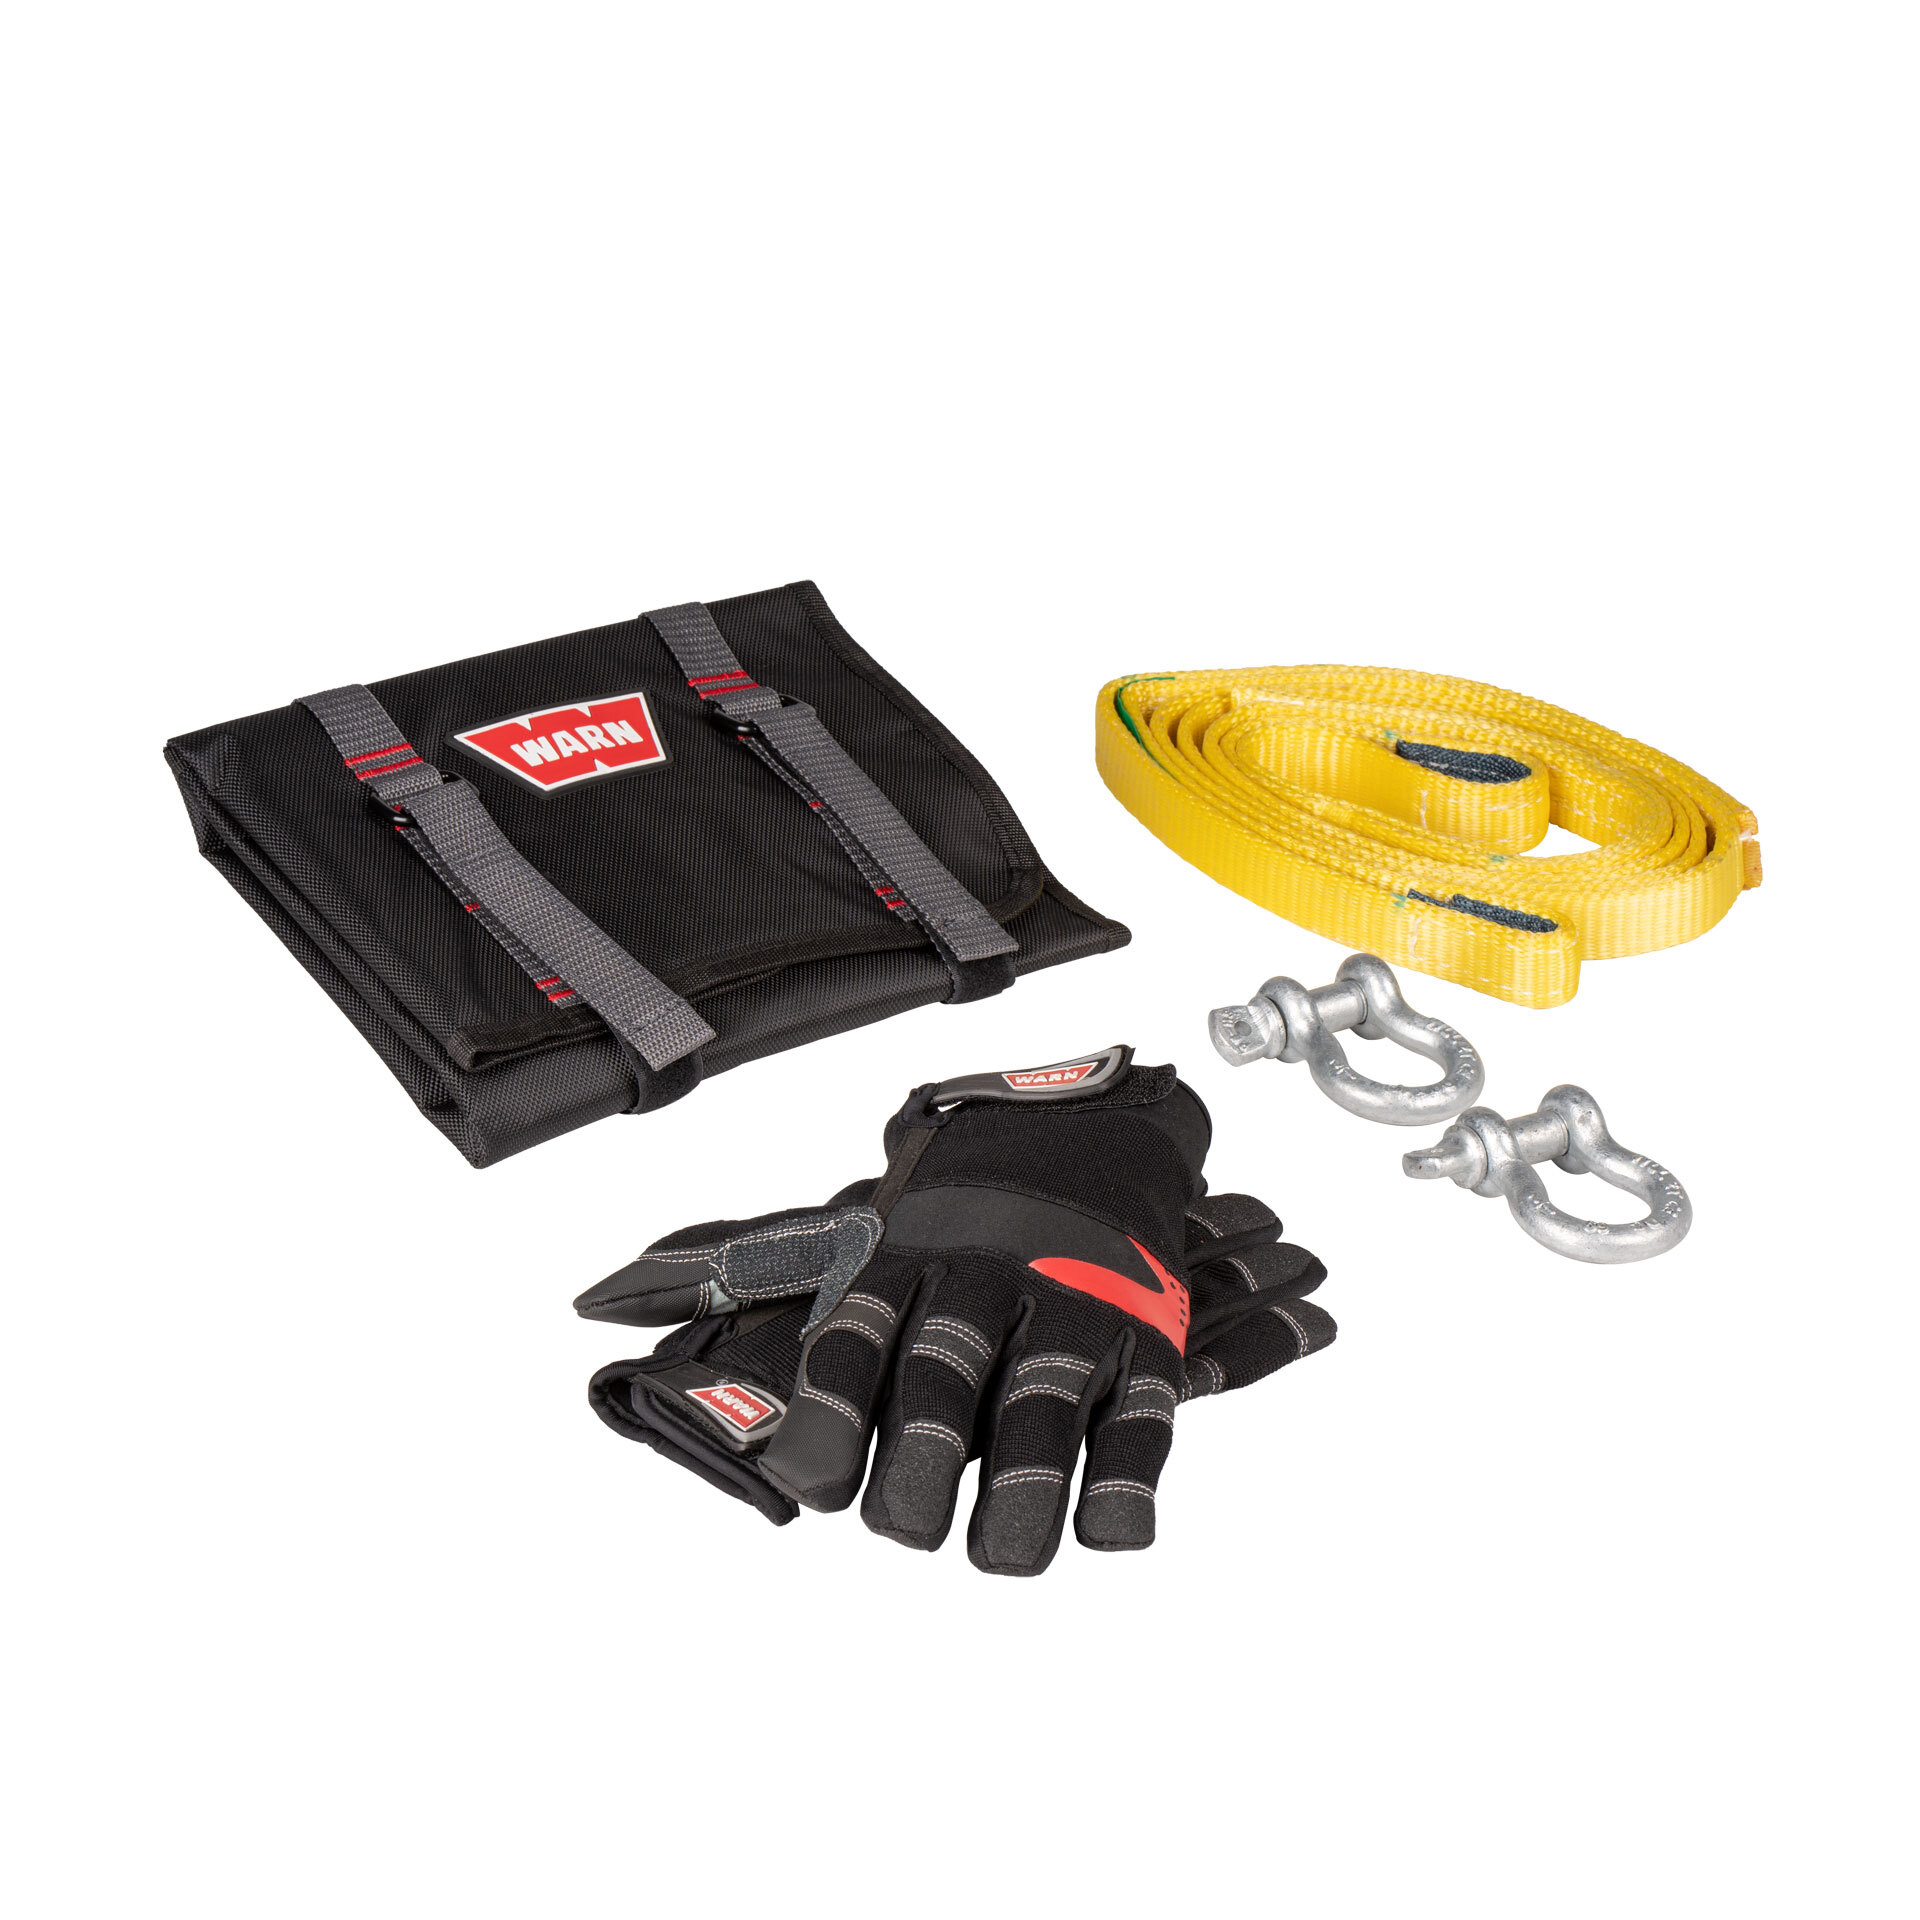 WARN® Light Duty Winch Accessory Kit